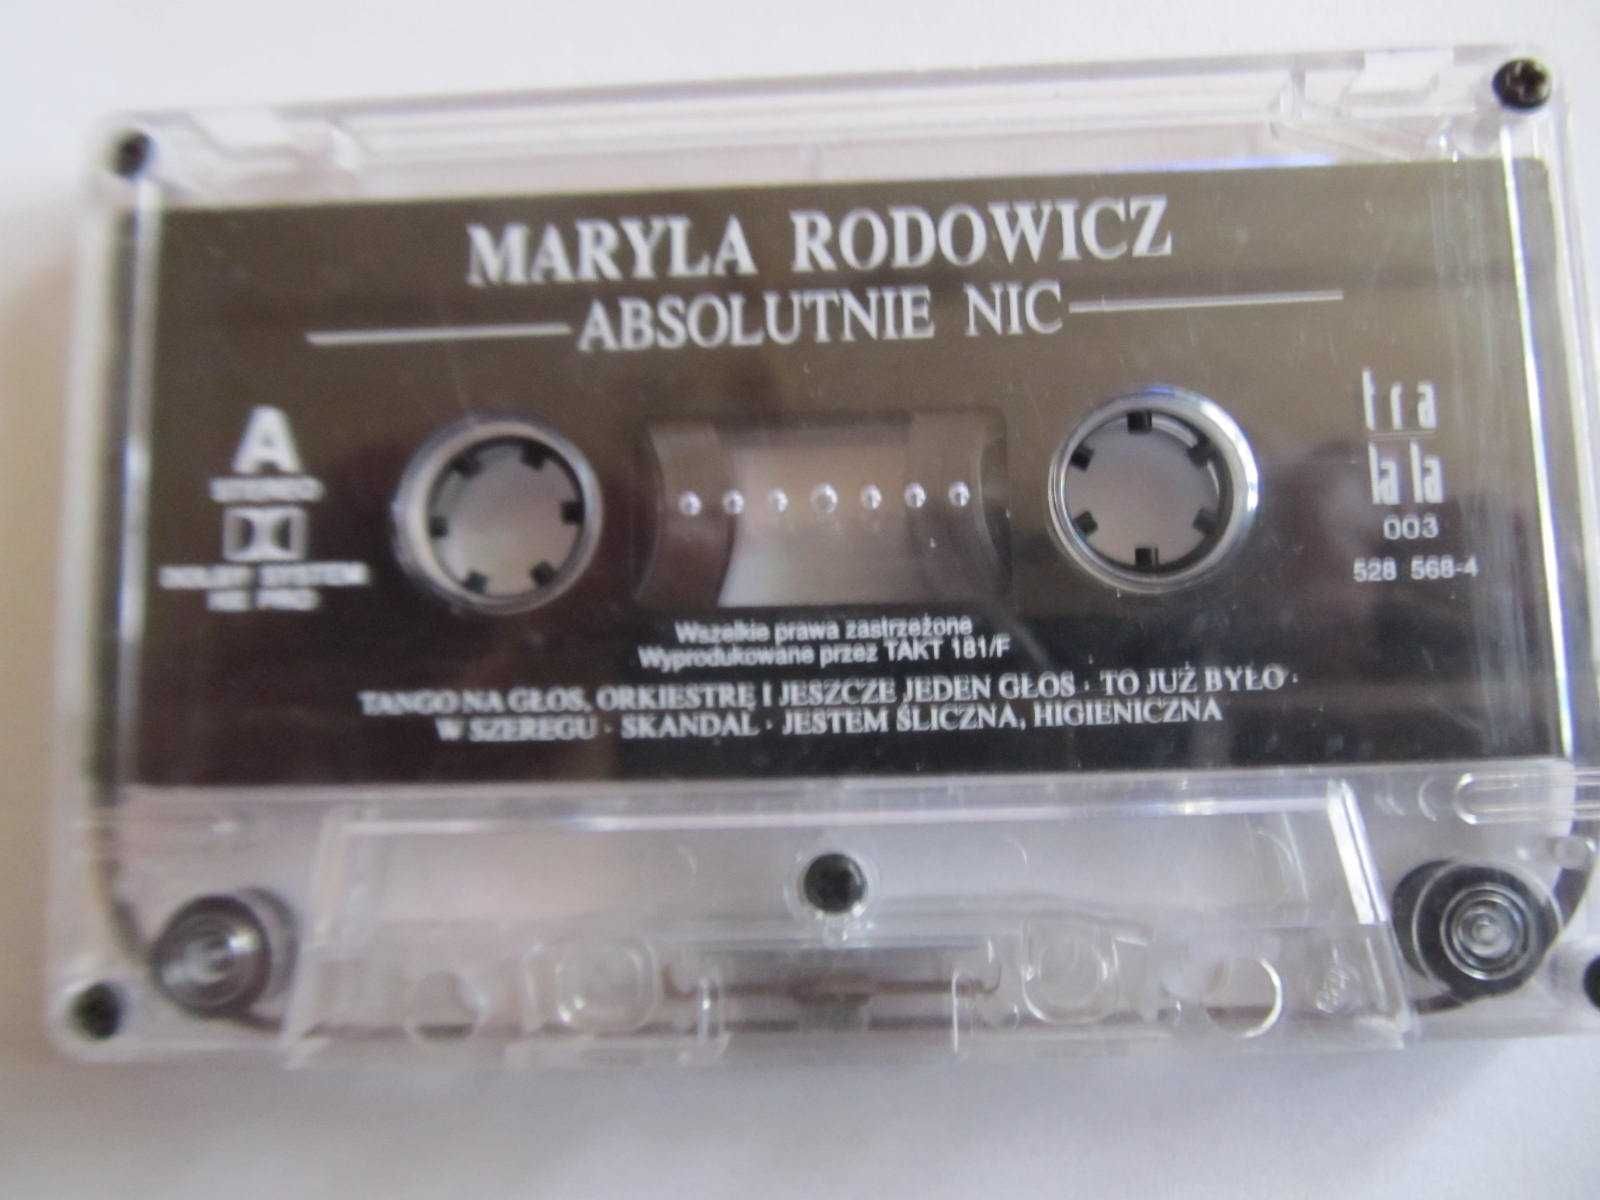 Maryla Rodowicz "Absolutnie nic"- kaseta audio